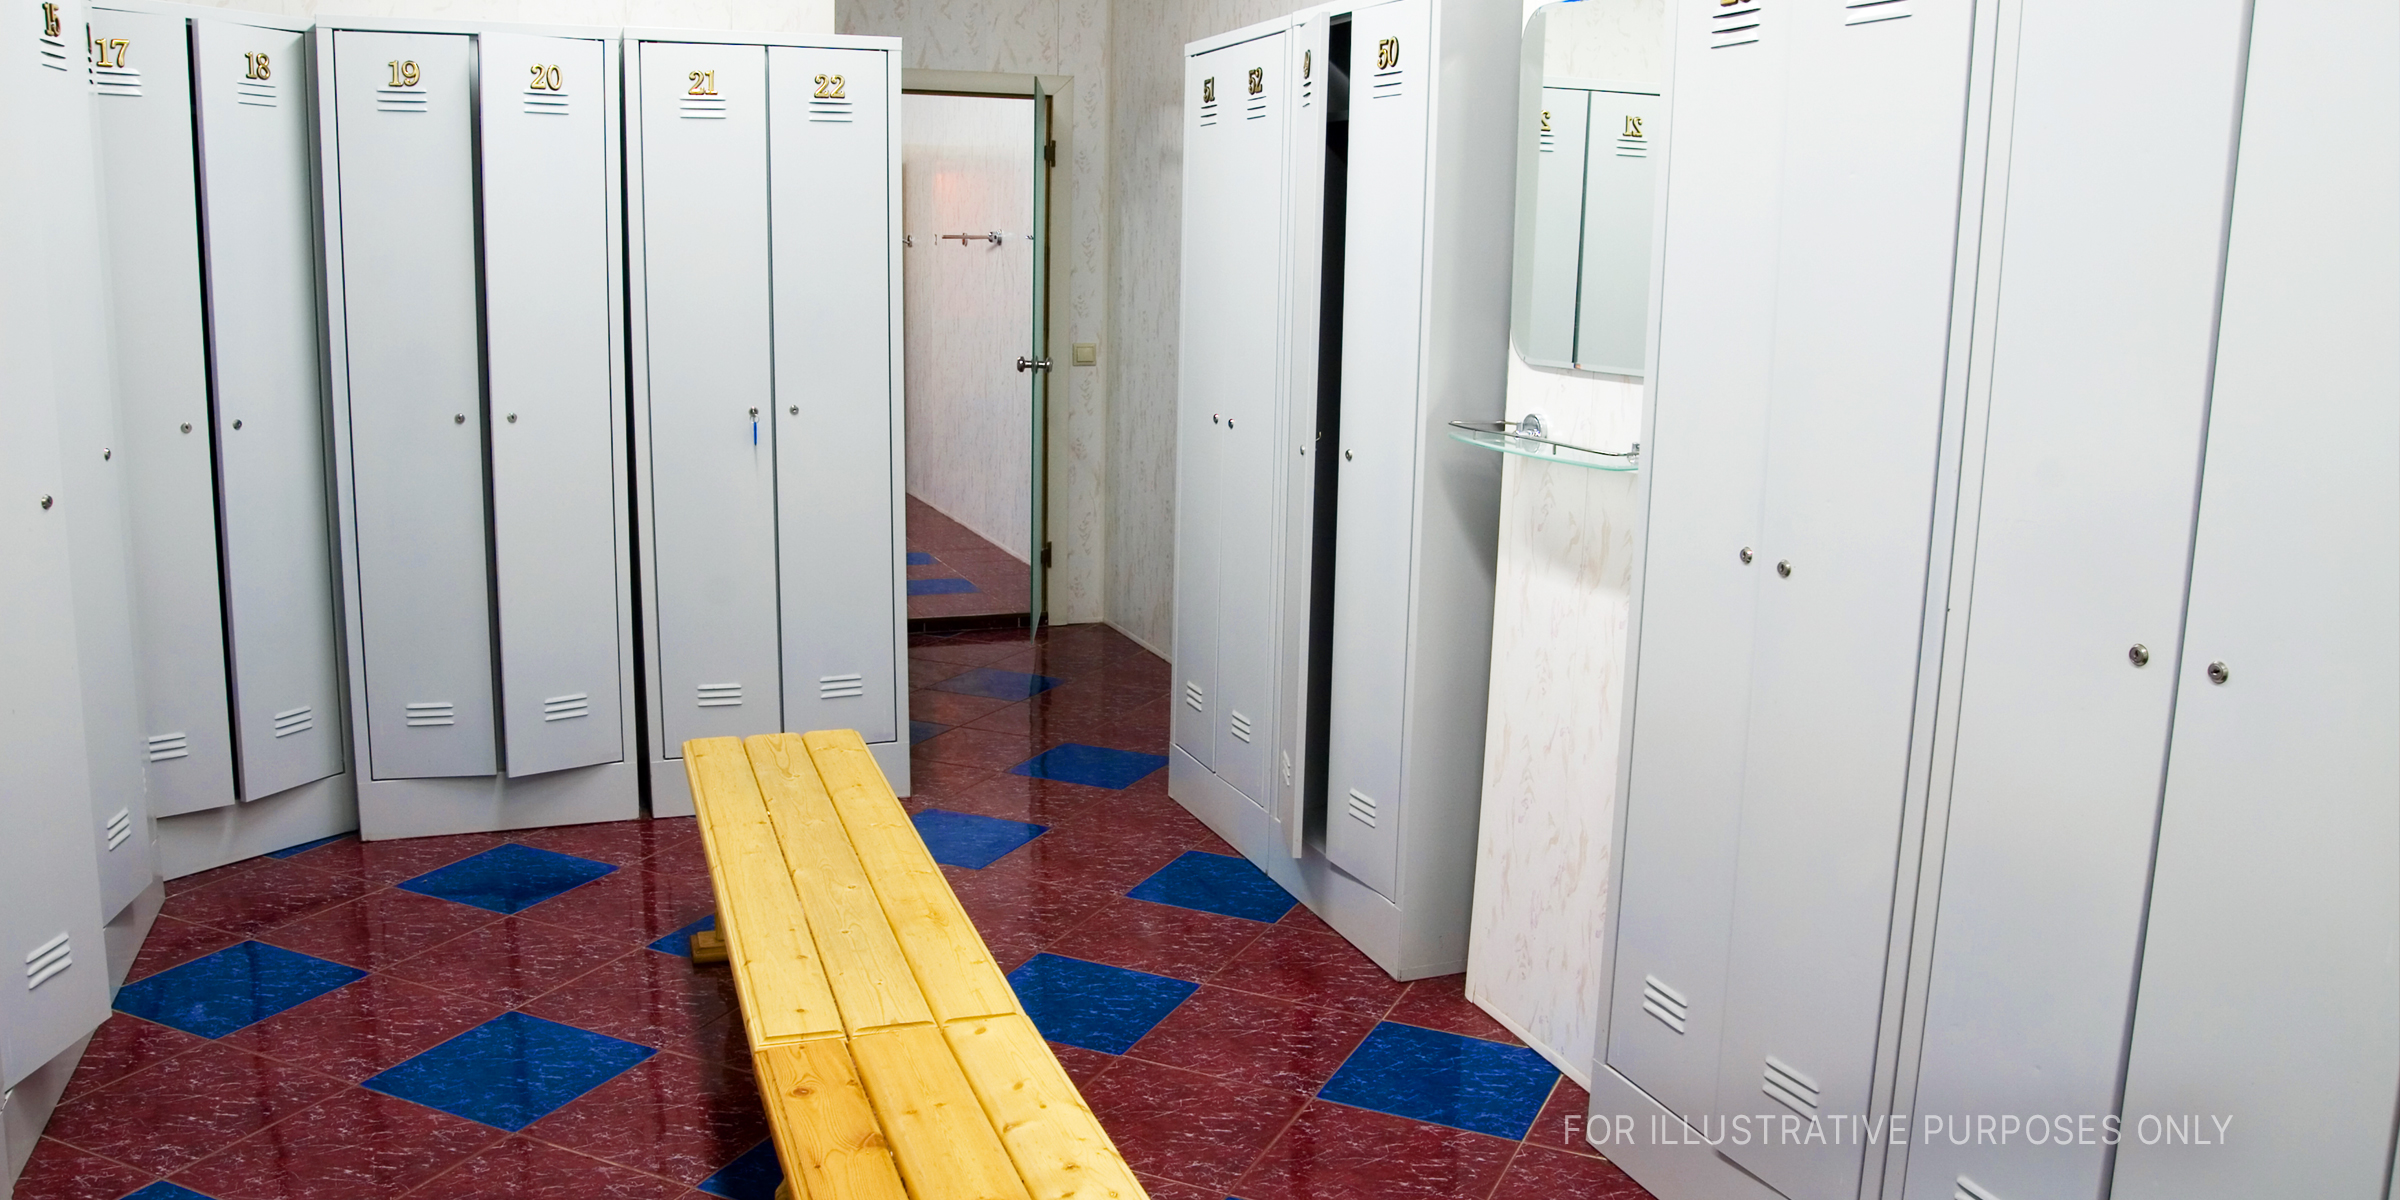 A locker room | Source: Shutterstock